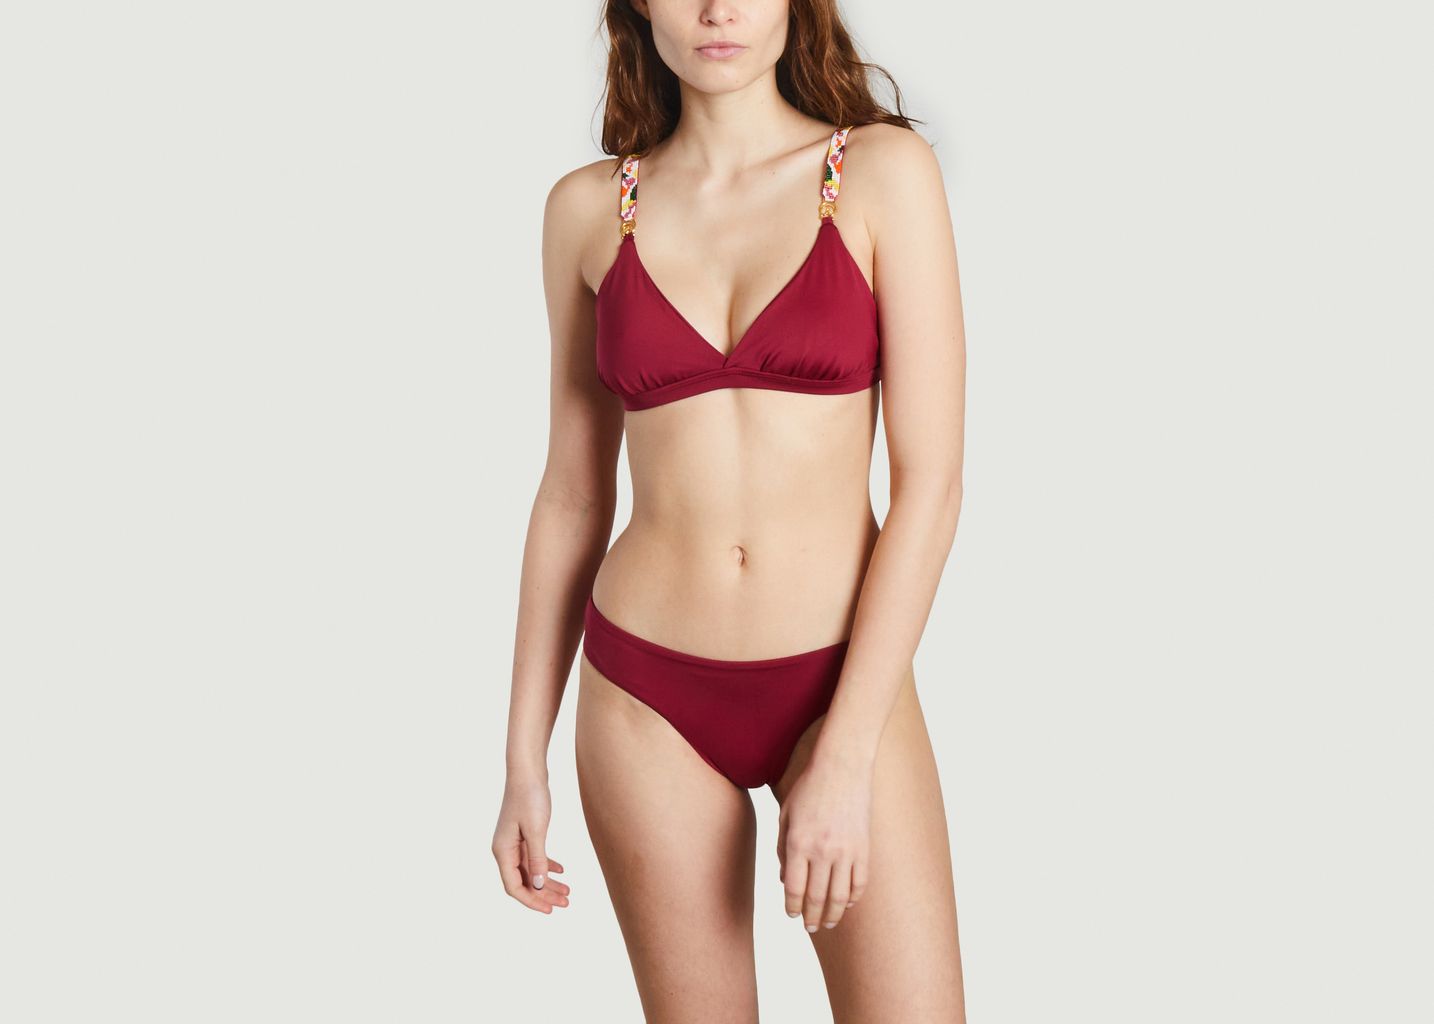 Ruby bikini top - Naiona